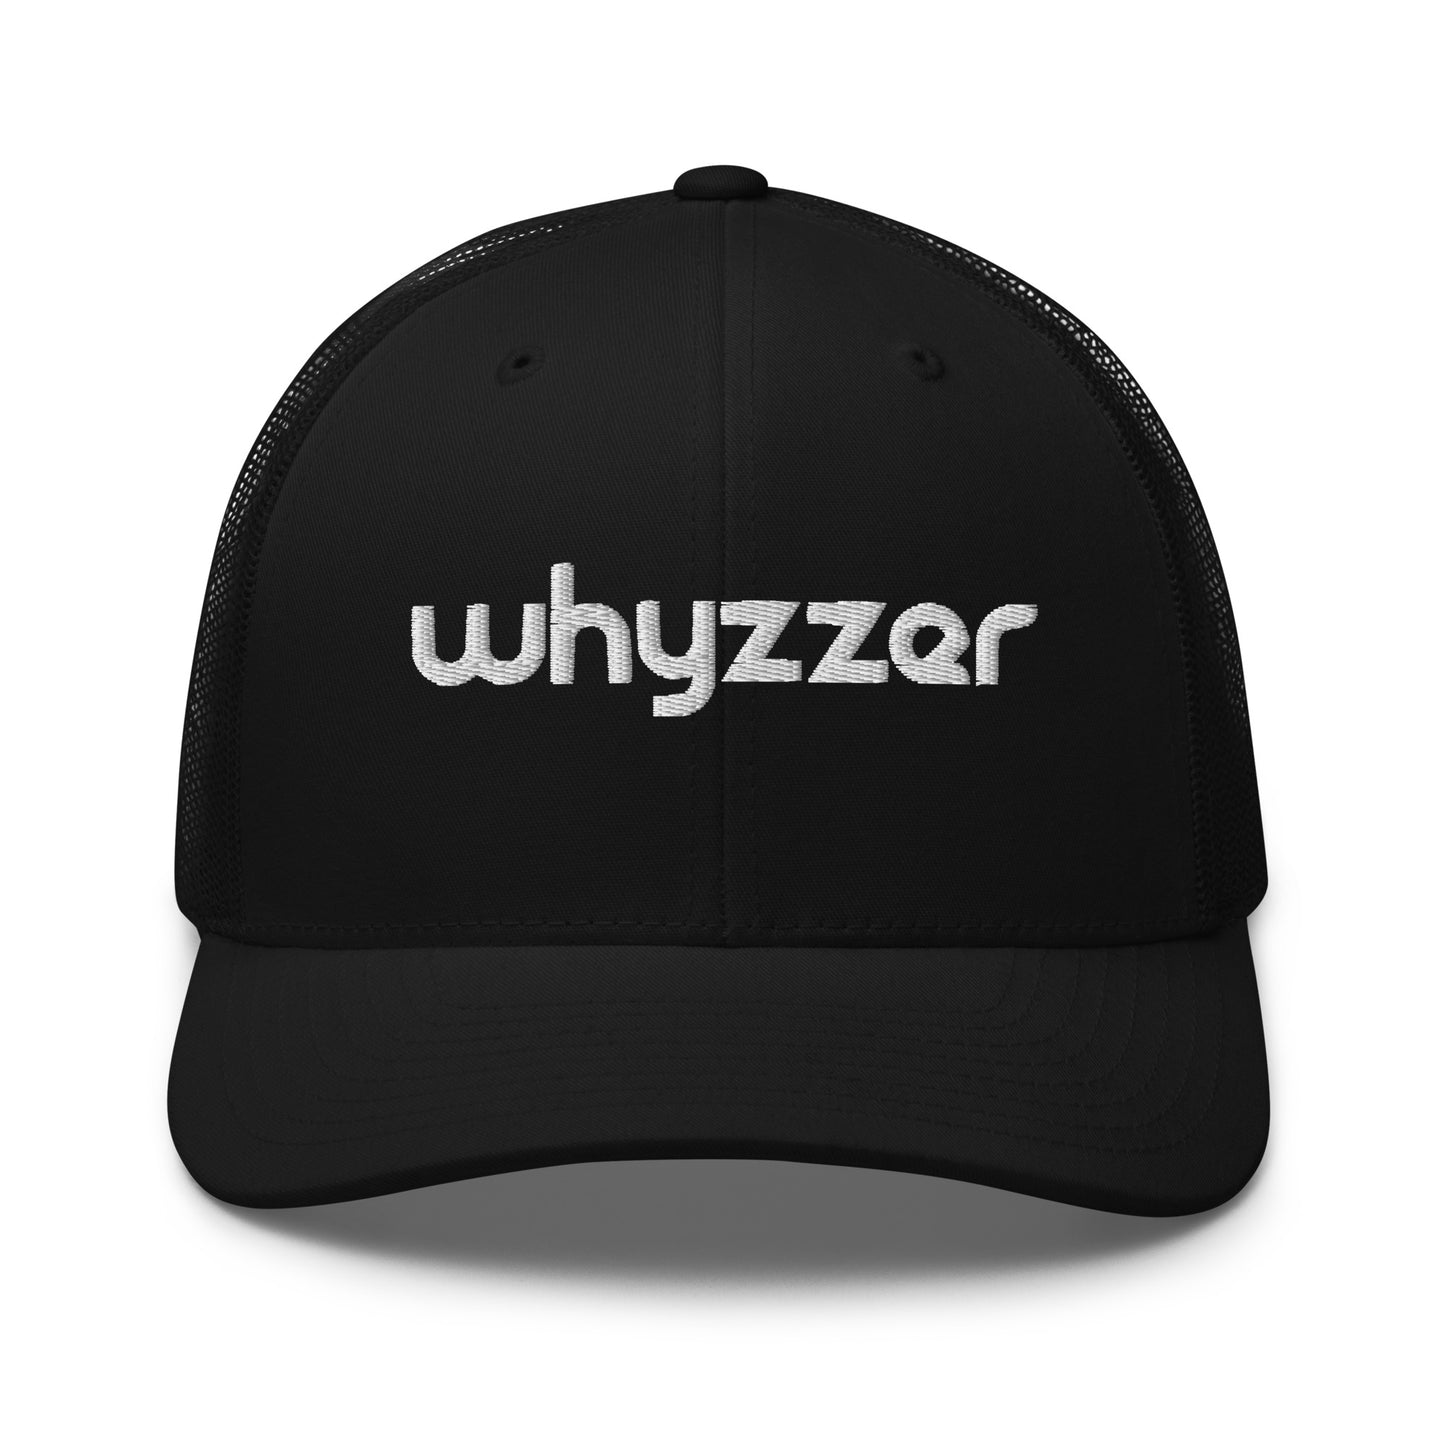 Whyzzer - Trucker Cap